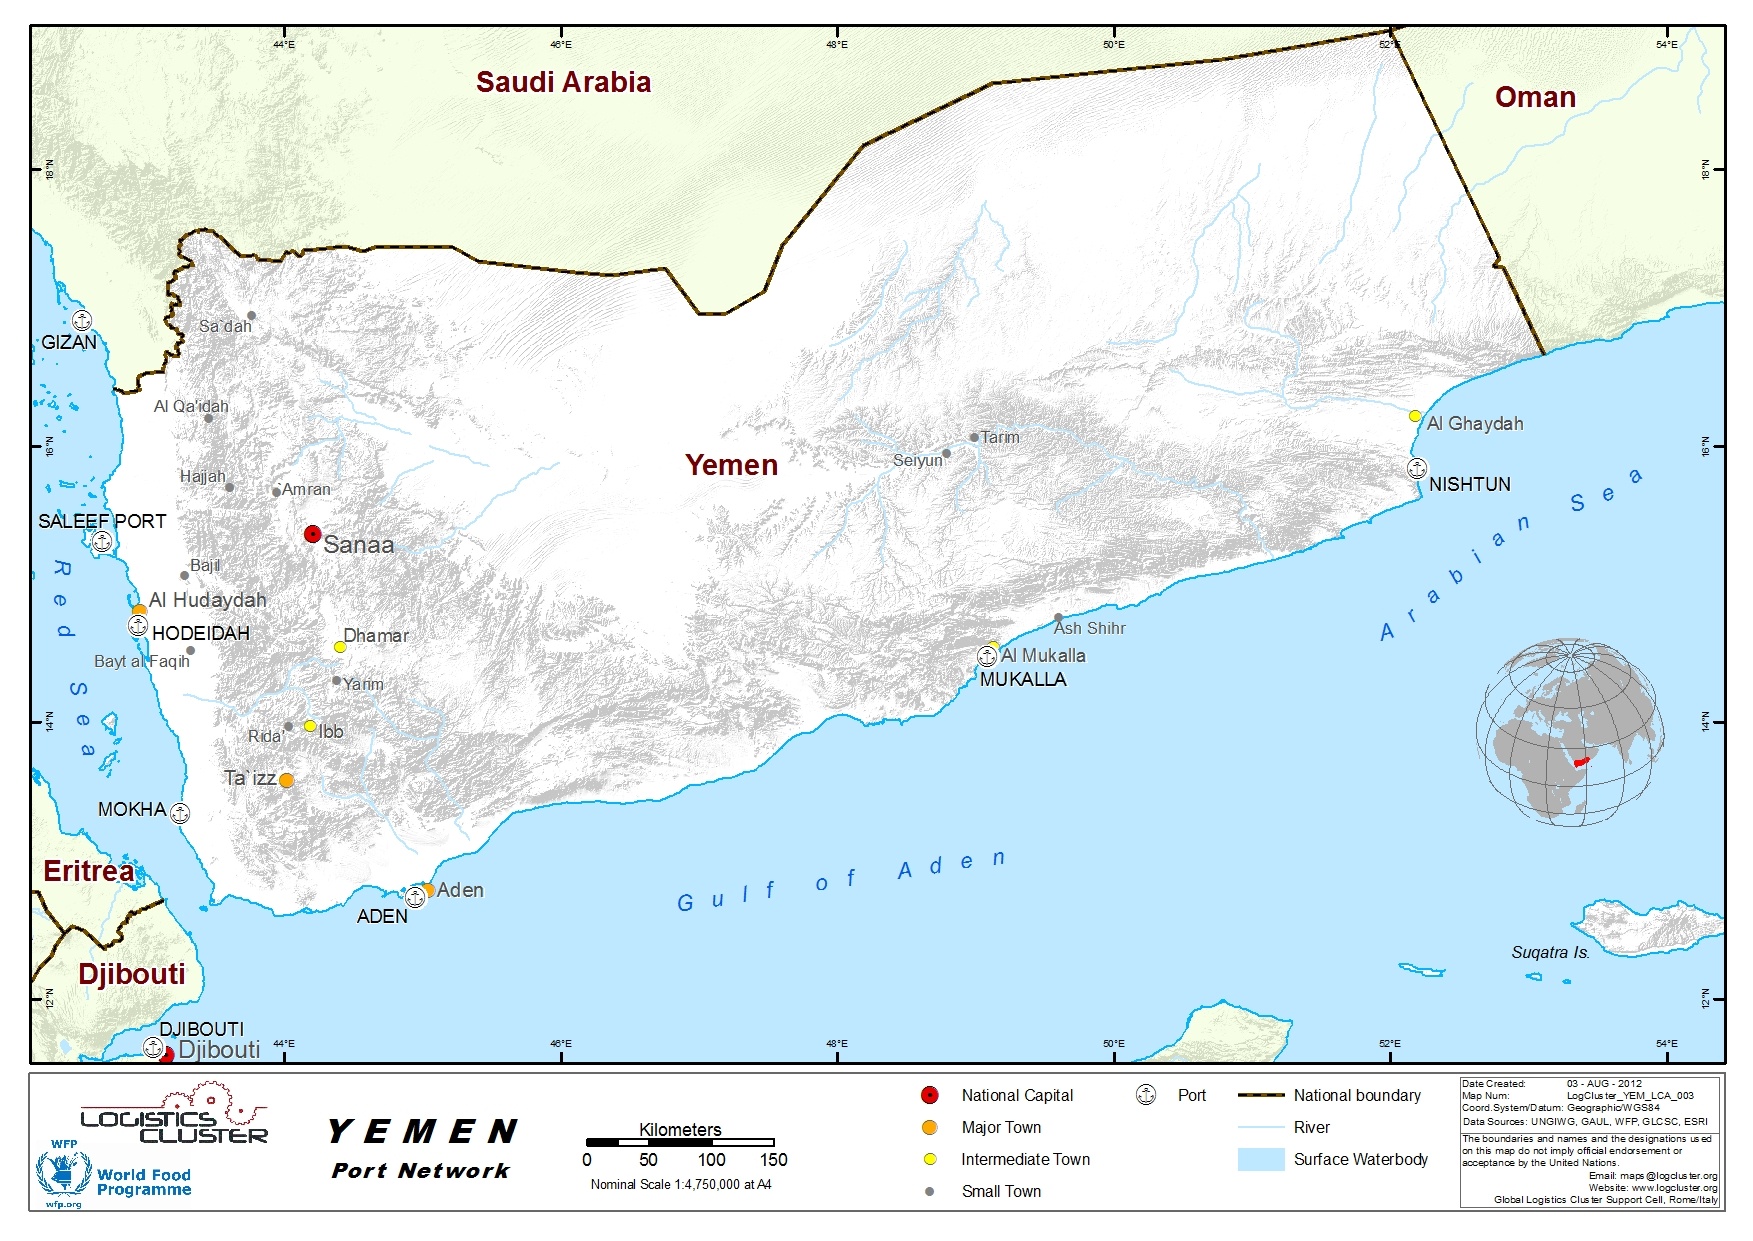 Yemen Ports 